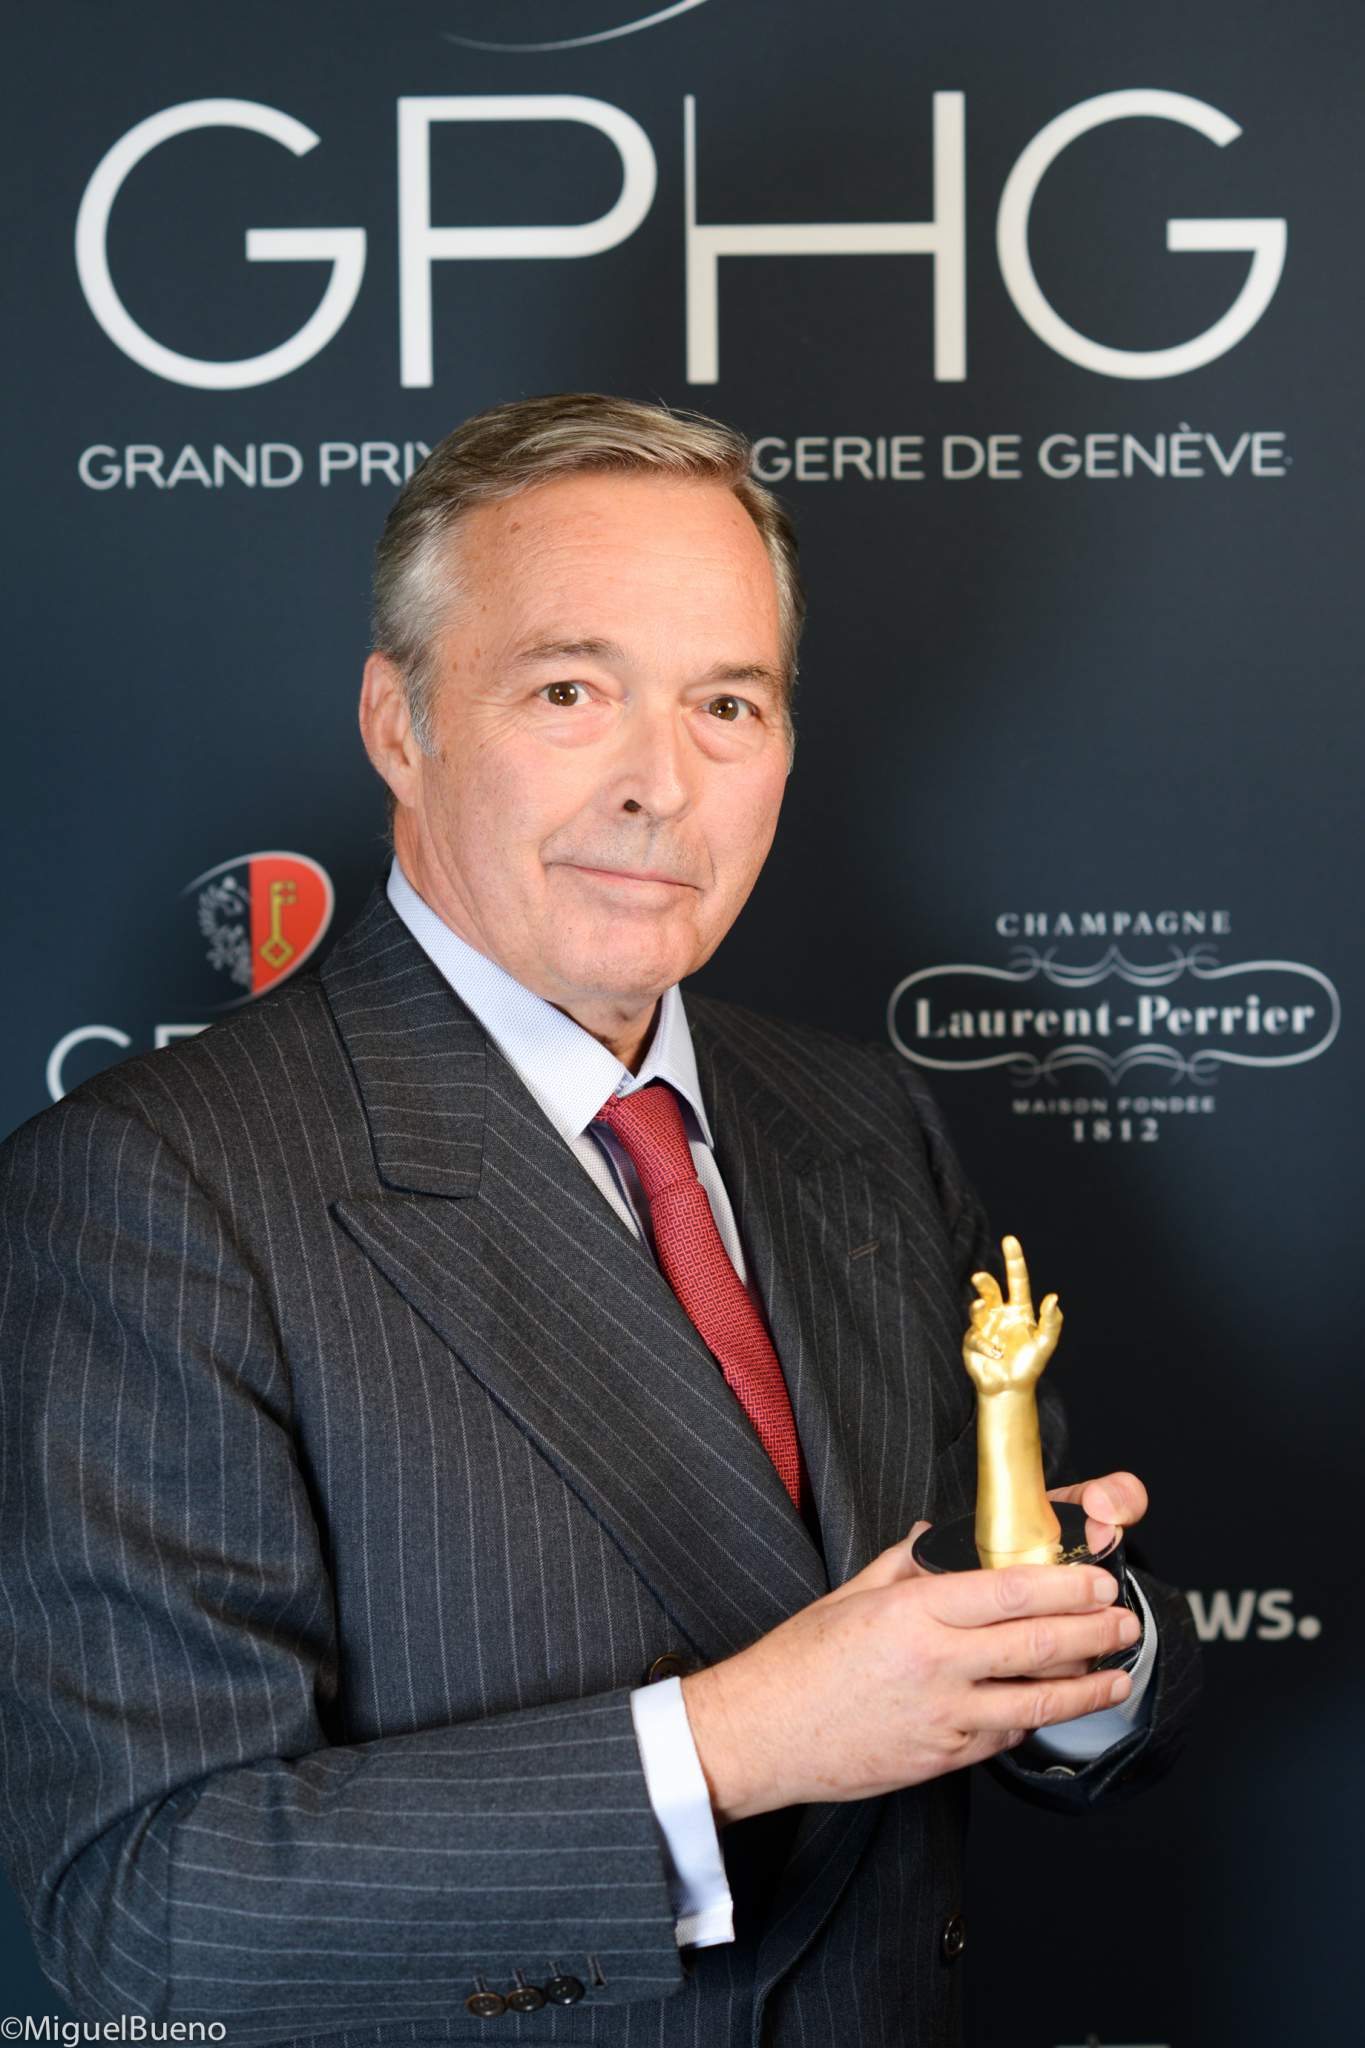 President of Chronométrie Ferdinand Berthoud, winner of the Chronometry Watch Prize 2019